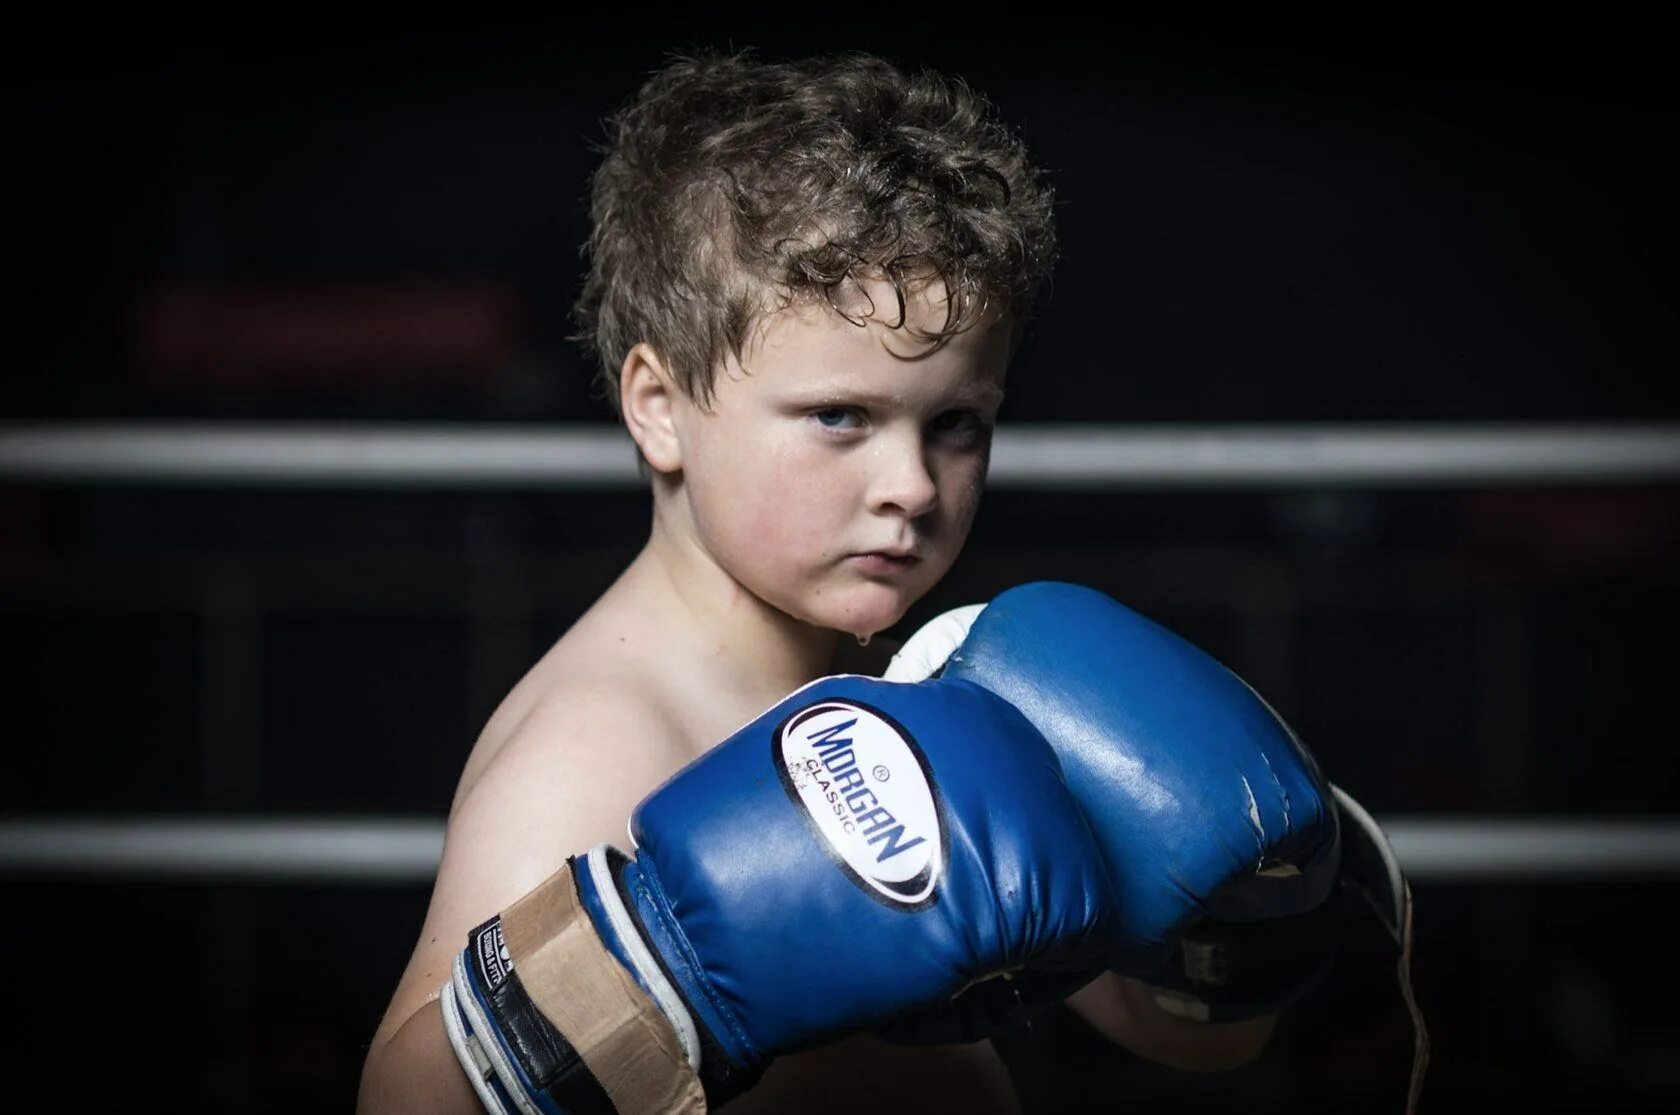 Мальчик в боксерских перчатках. Ребенок боксер. Детский бокс. Бокс дети. Покажи картинки бокса